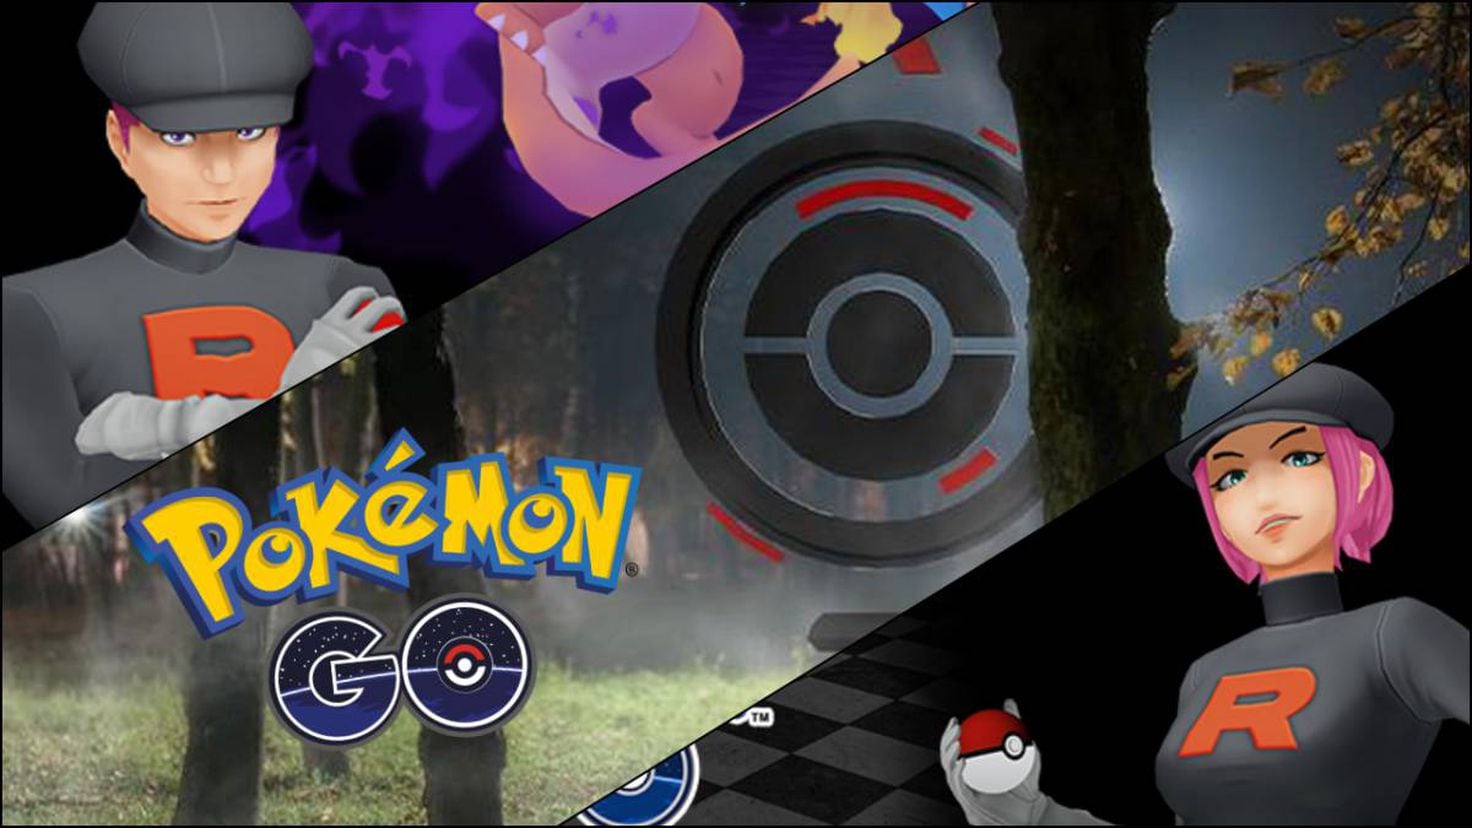 Nuevo evento con Huevos del Team GO Rocket para Pokémon GO